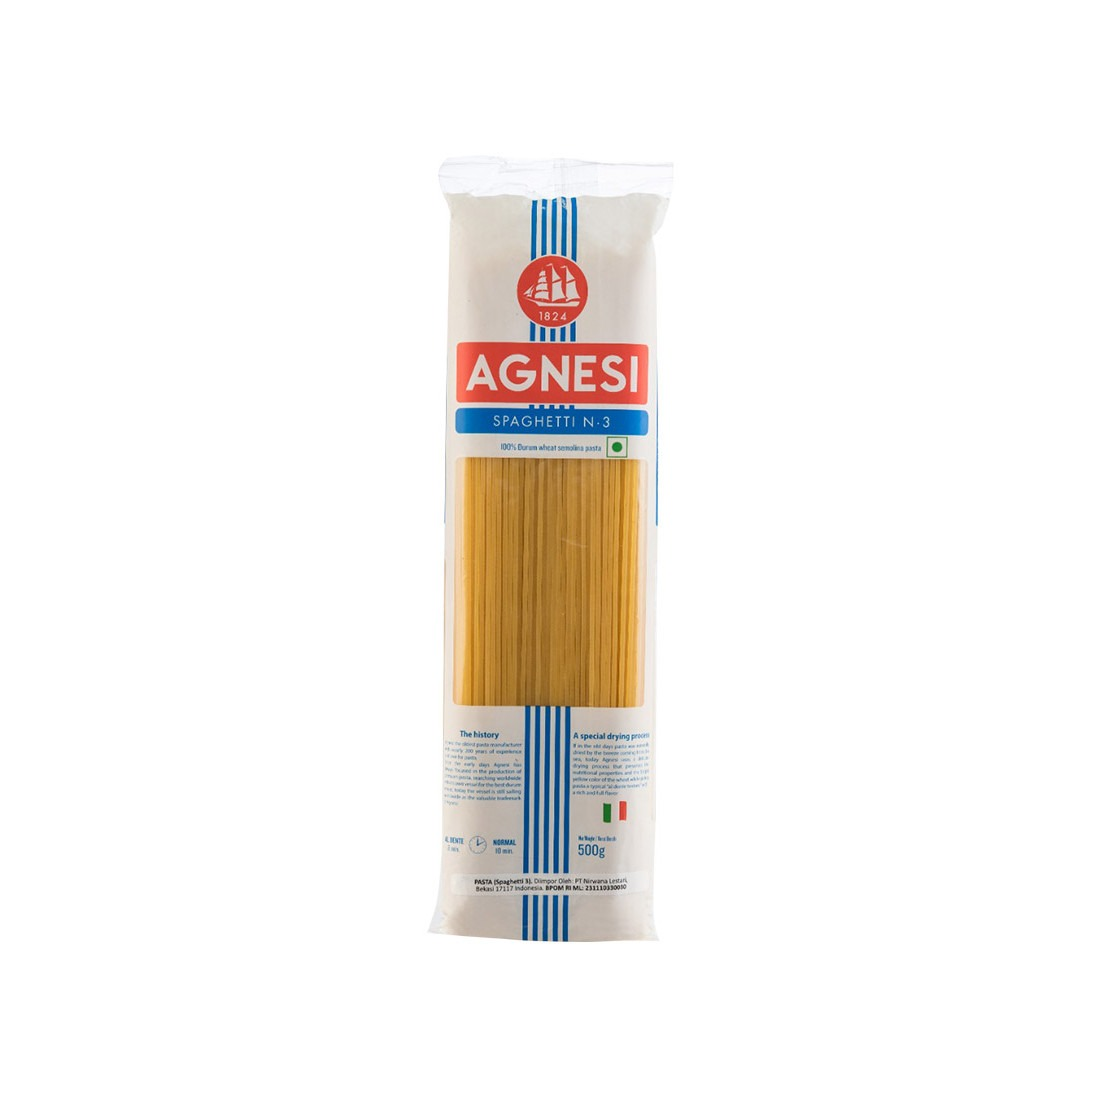 Agnesi 500g Pasta Spaghetti